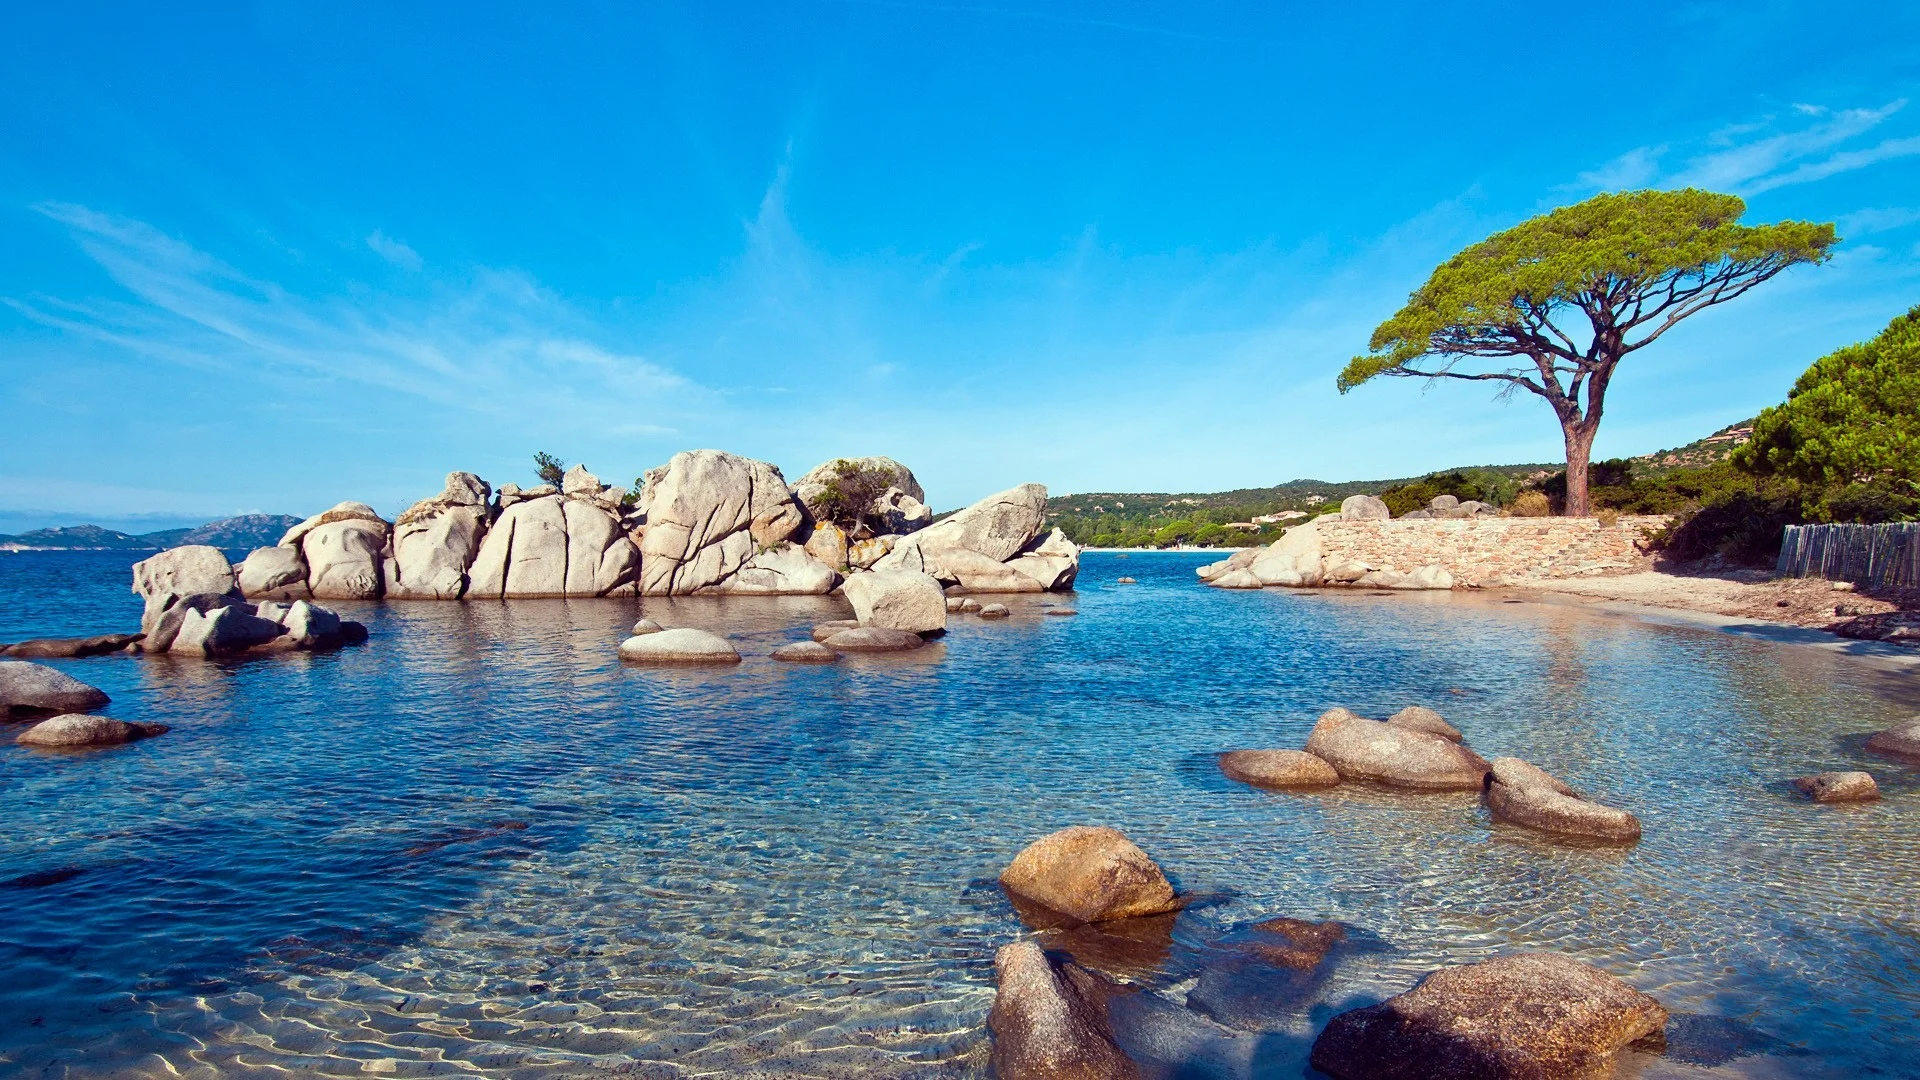 Bãi biển Palombaggia: Nếu bạn đang tìm kiếm một bãi biển độc đáo và tuyệt đẹp để thư giãn, bãi biển Palombaggia có lẽ là lựa chọn tốt nhất. Hình ảnh đưa bạn đến với nơi có cát trắng mịn, đá granit đỏ và nước biển trong xanh. Nó sẽ cho bạn một kỳ nghỉ đáng nhớ và tuyệt vời nhất.